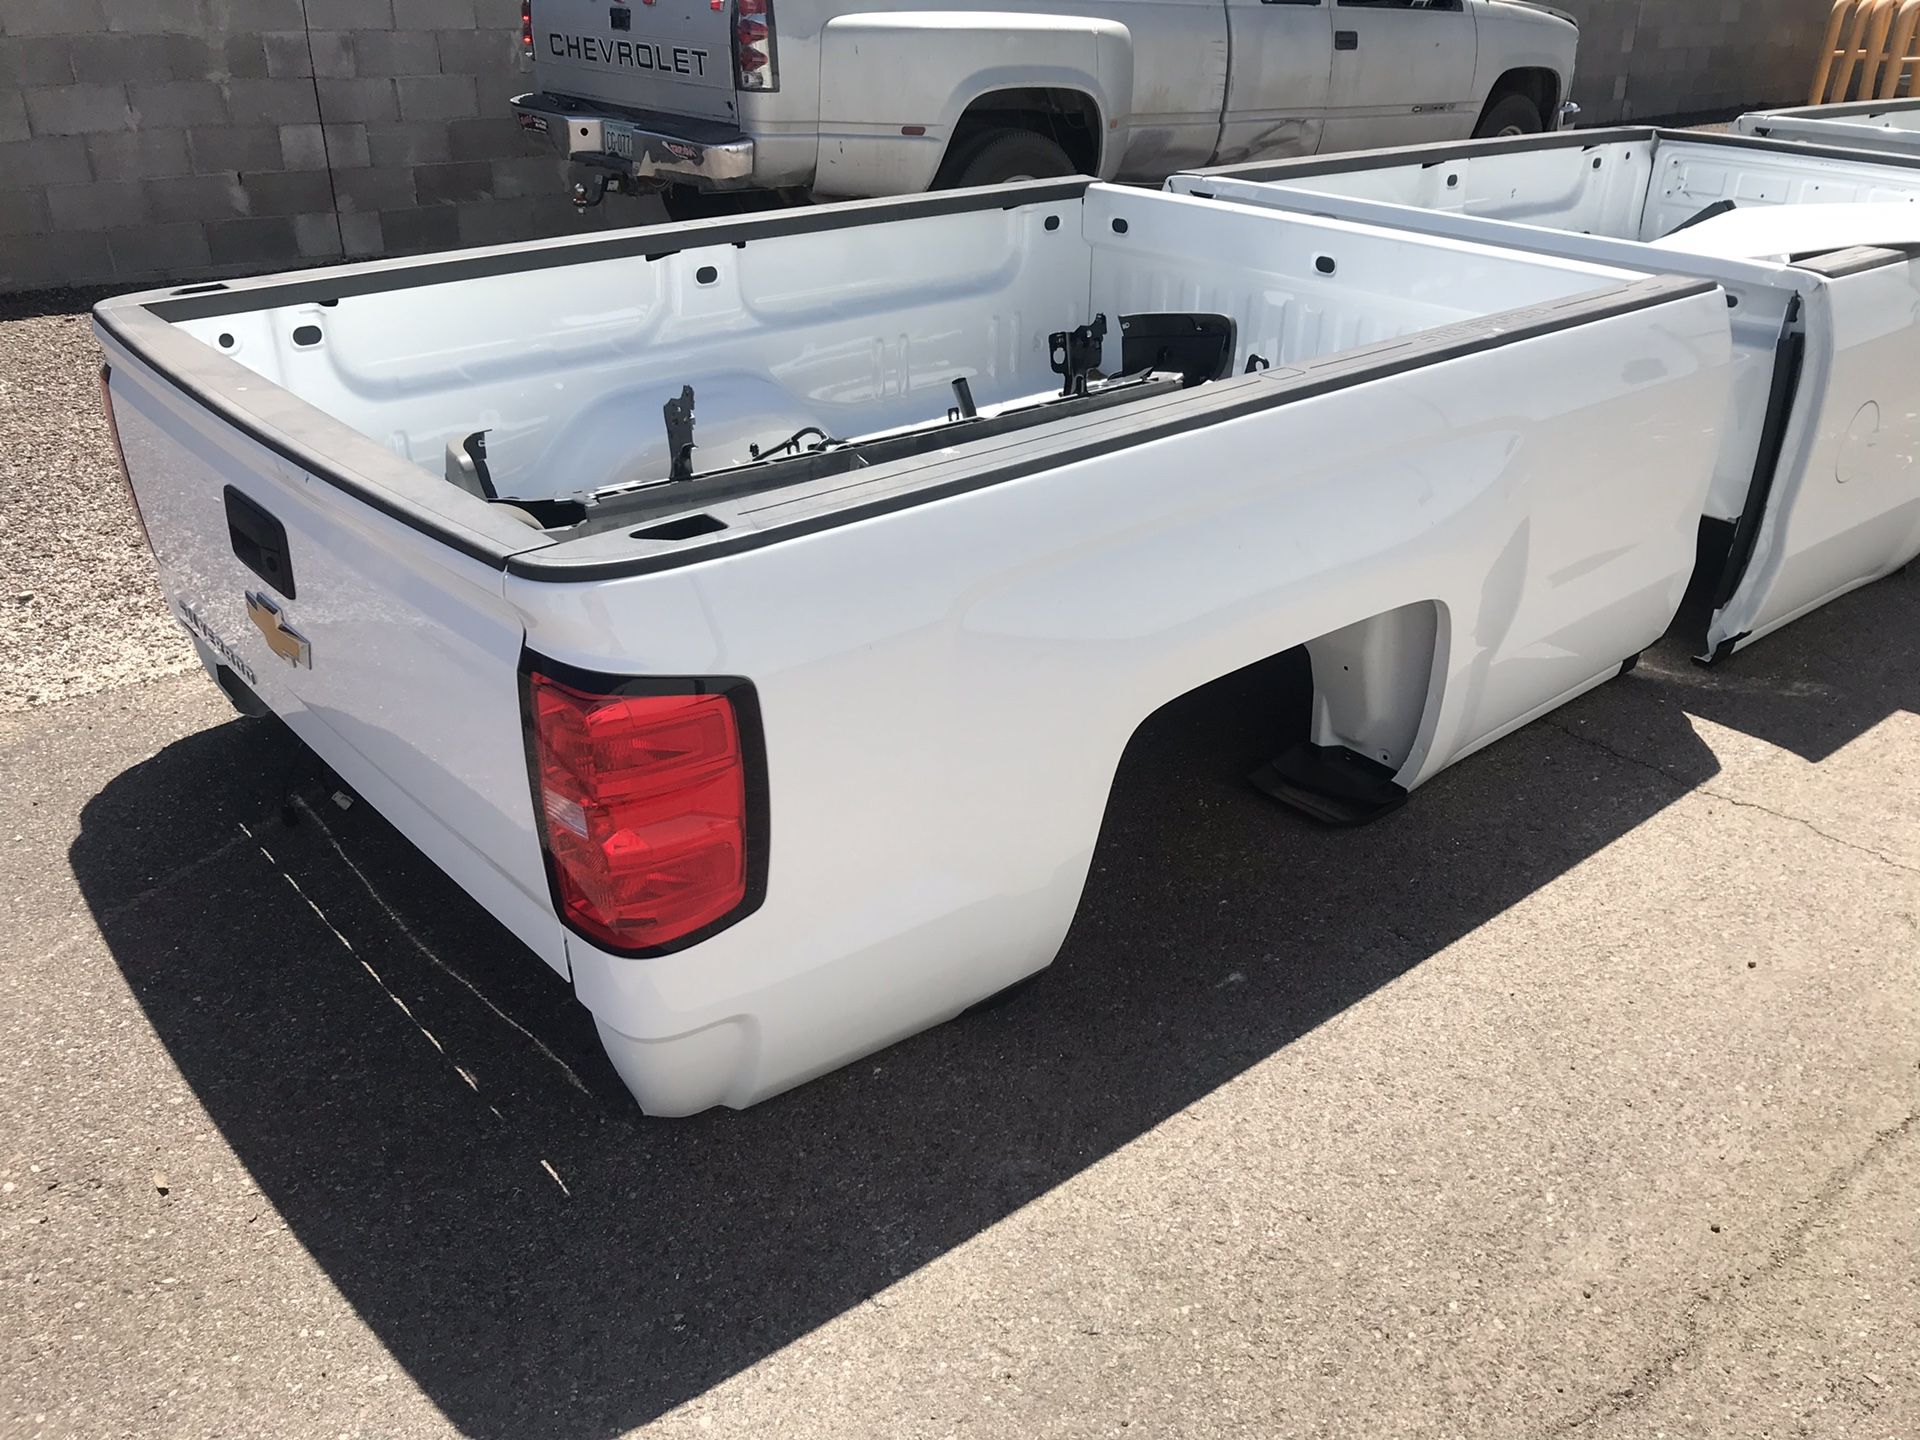 Chevy Silverado truck beds